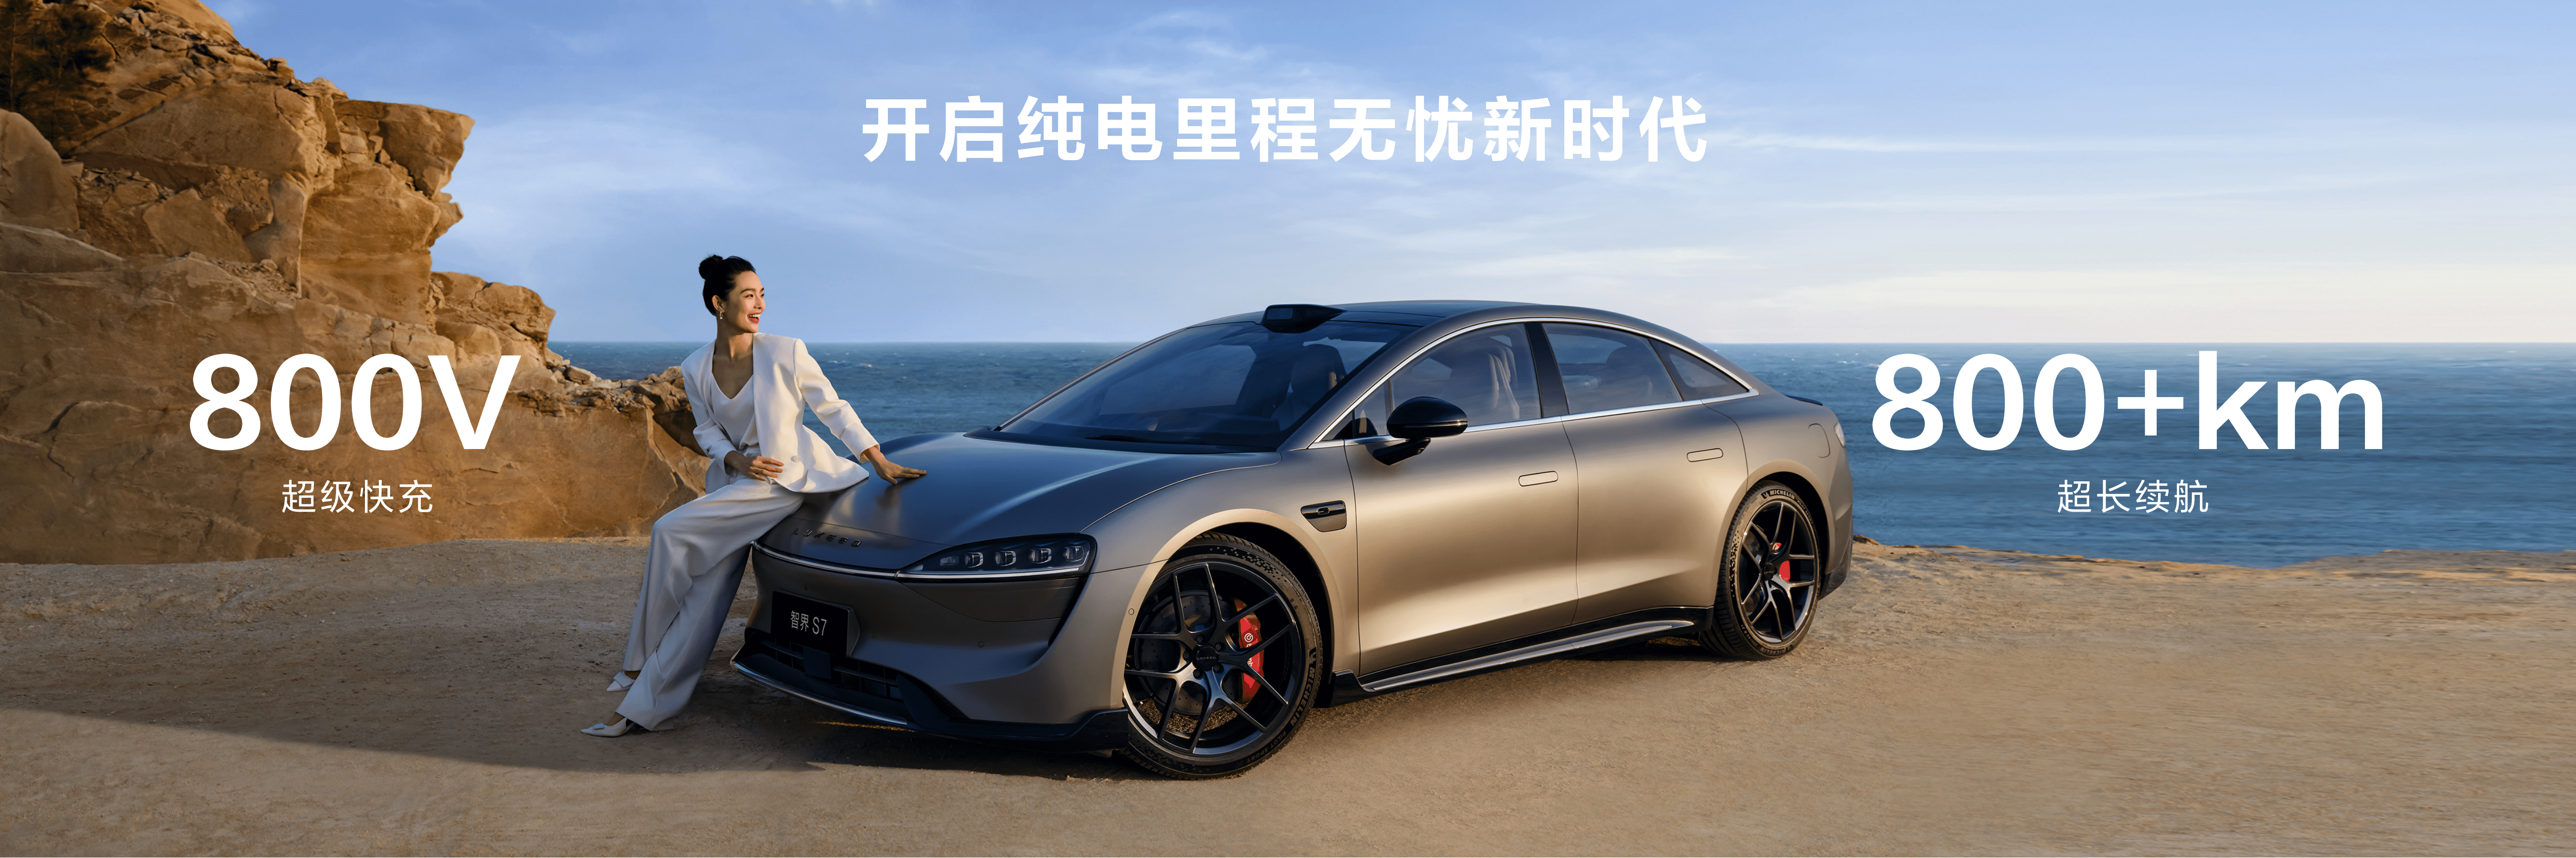 预售258万元起,华为智选车业务首款轿车智界s7开启预定